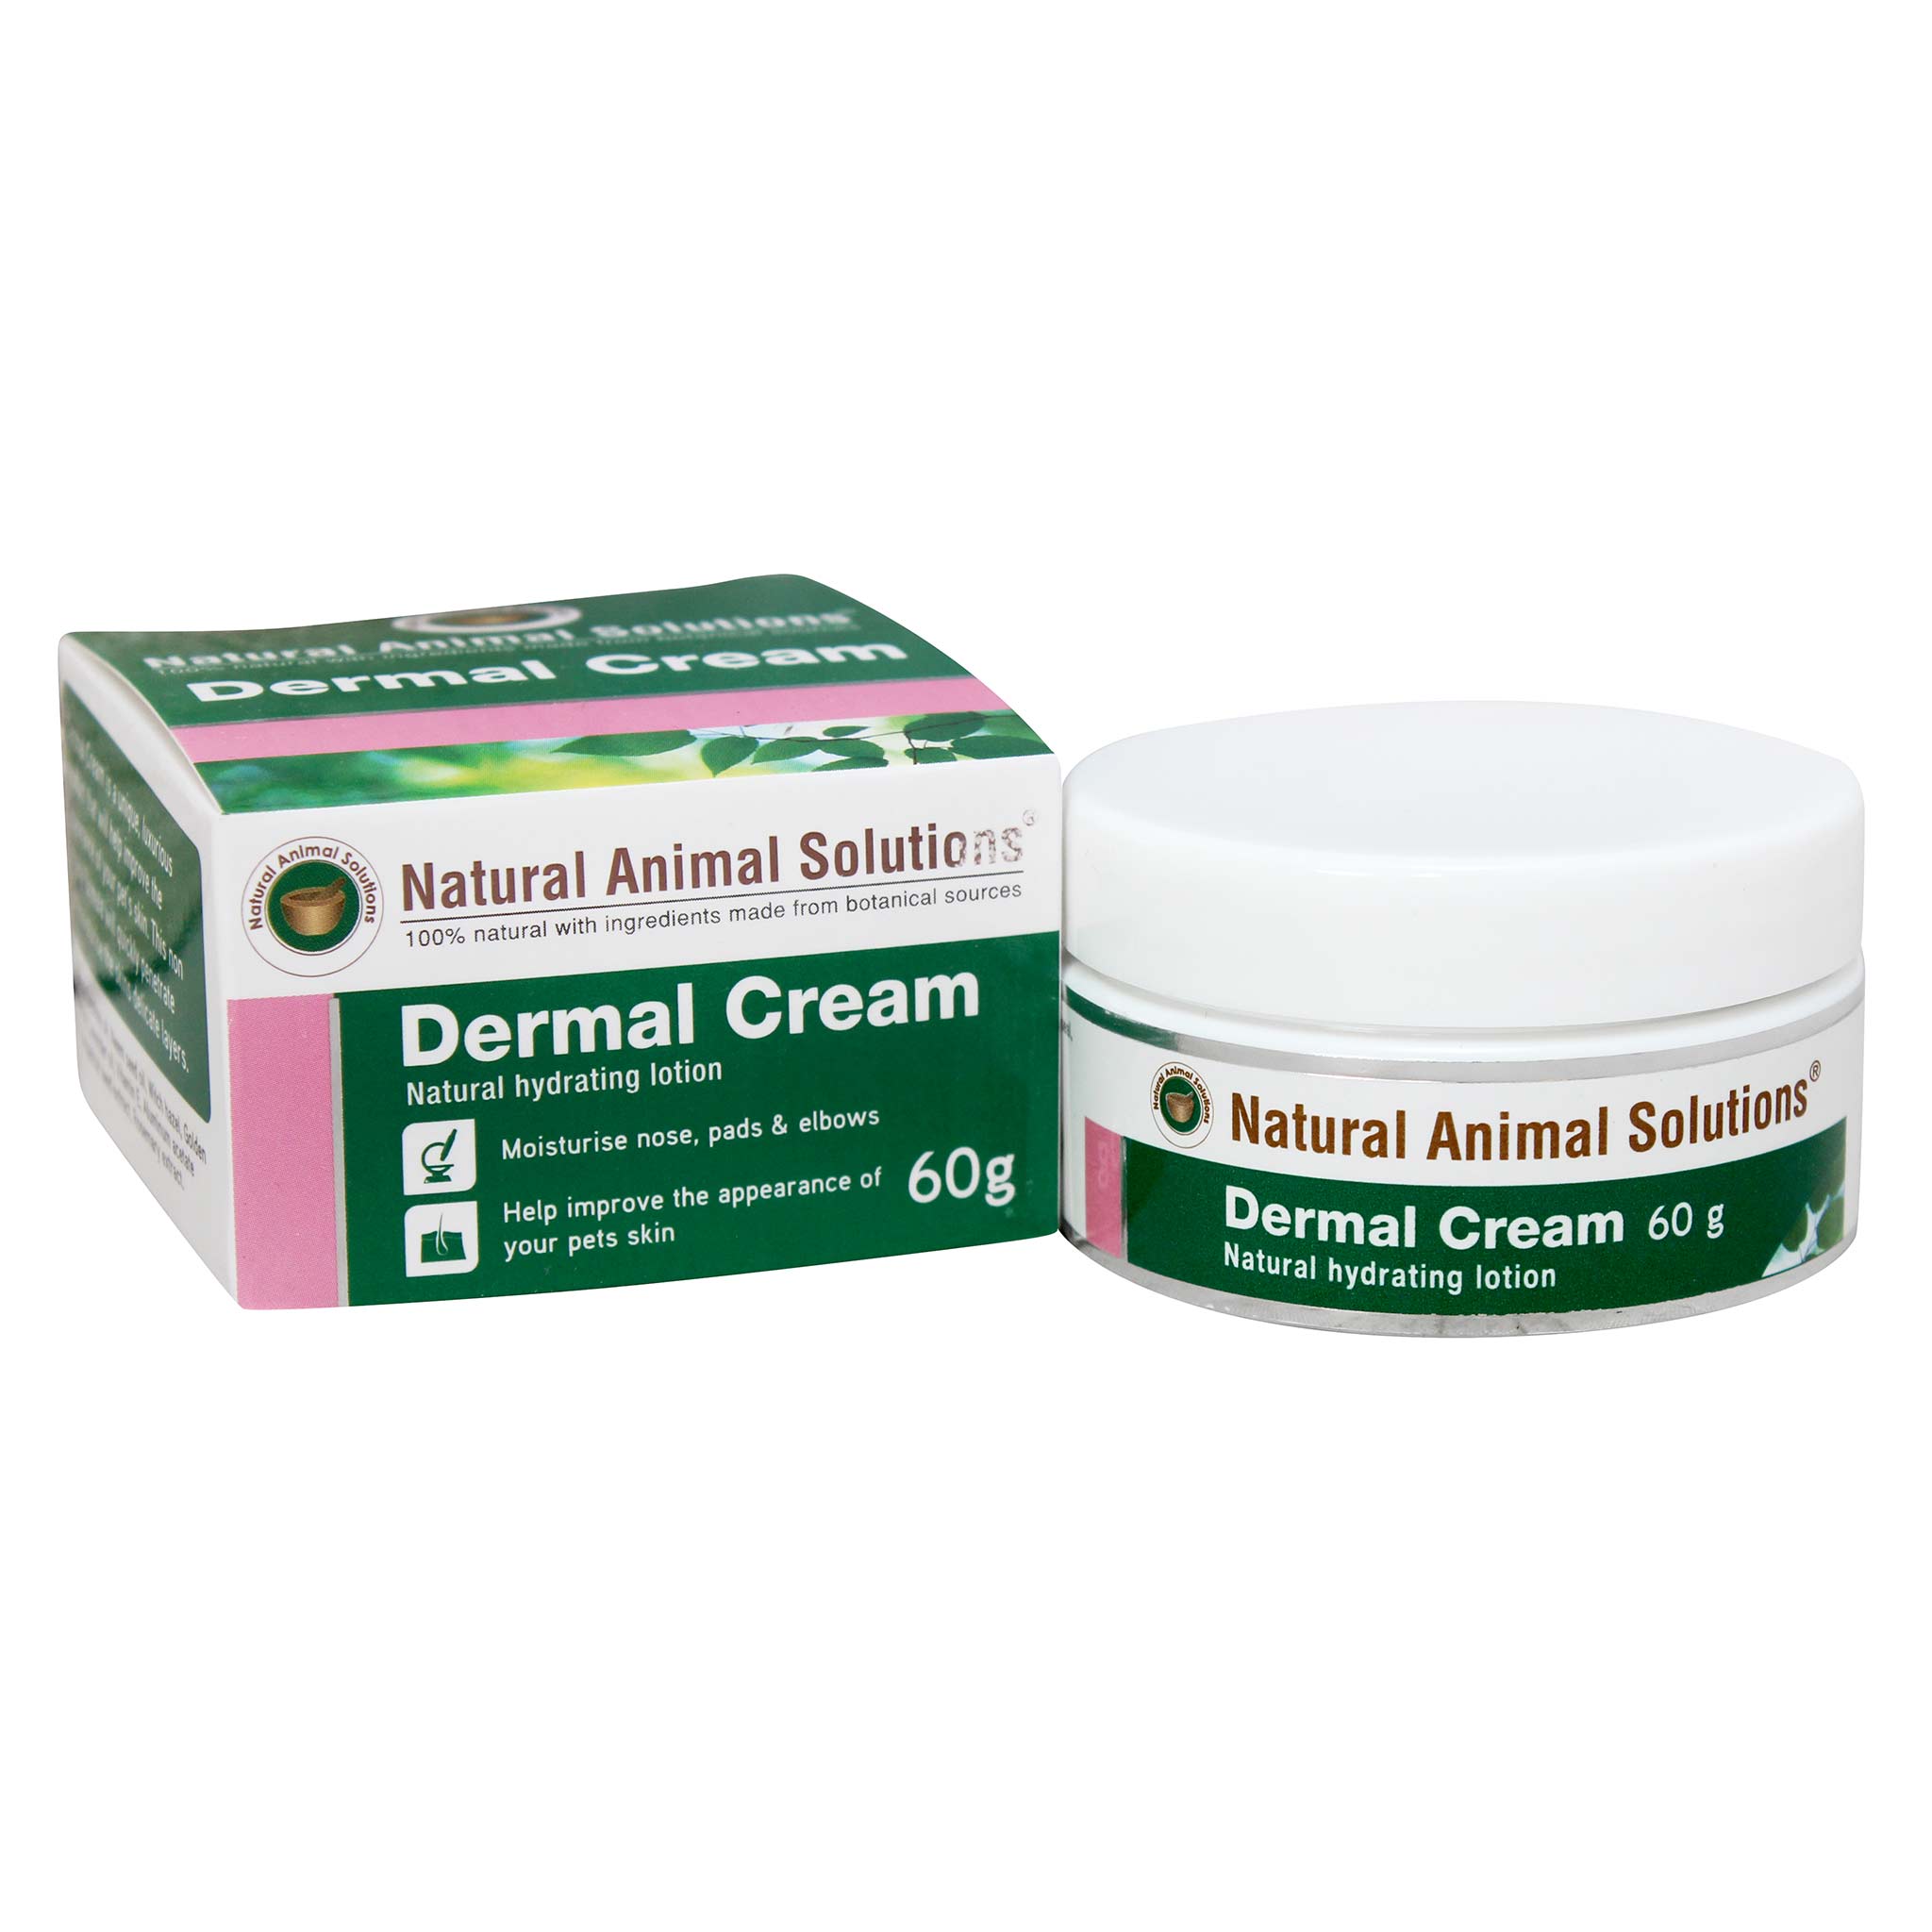 NAS Dermal Cream抗敏止痕消炎膏